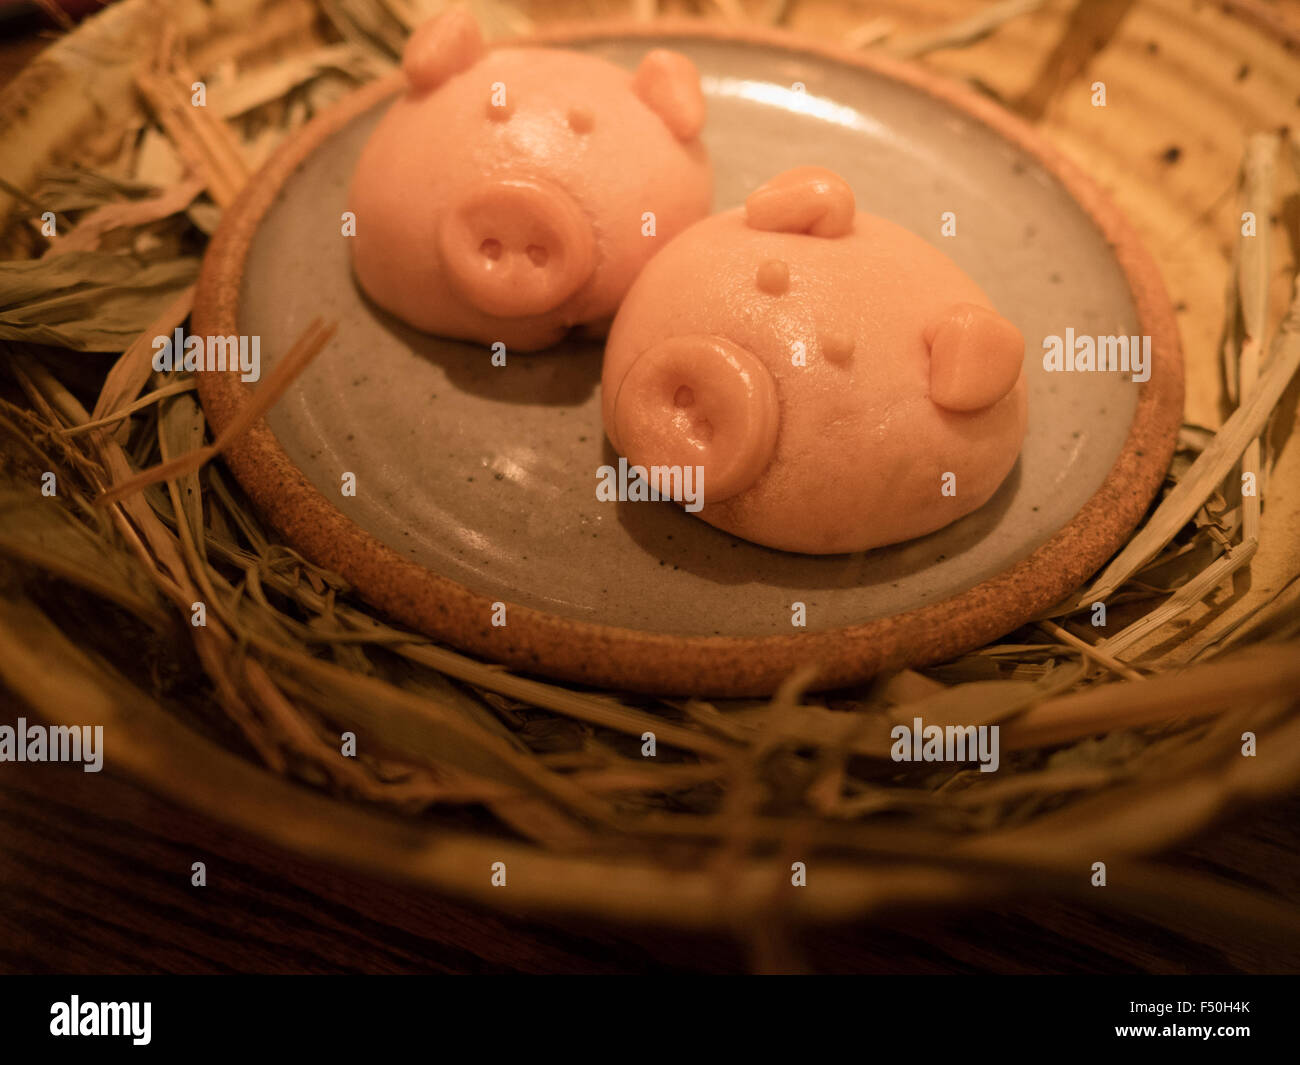 Stile cinese di maiale cotto a vapore i panini da orzo suina di Austin in Texas Foto Stock